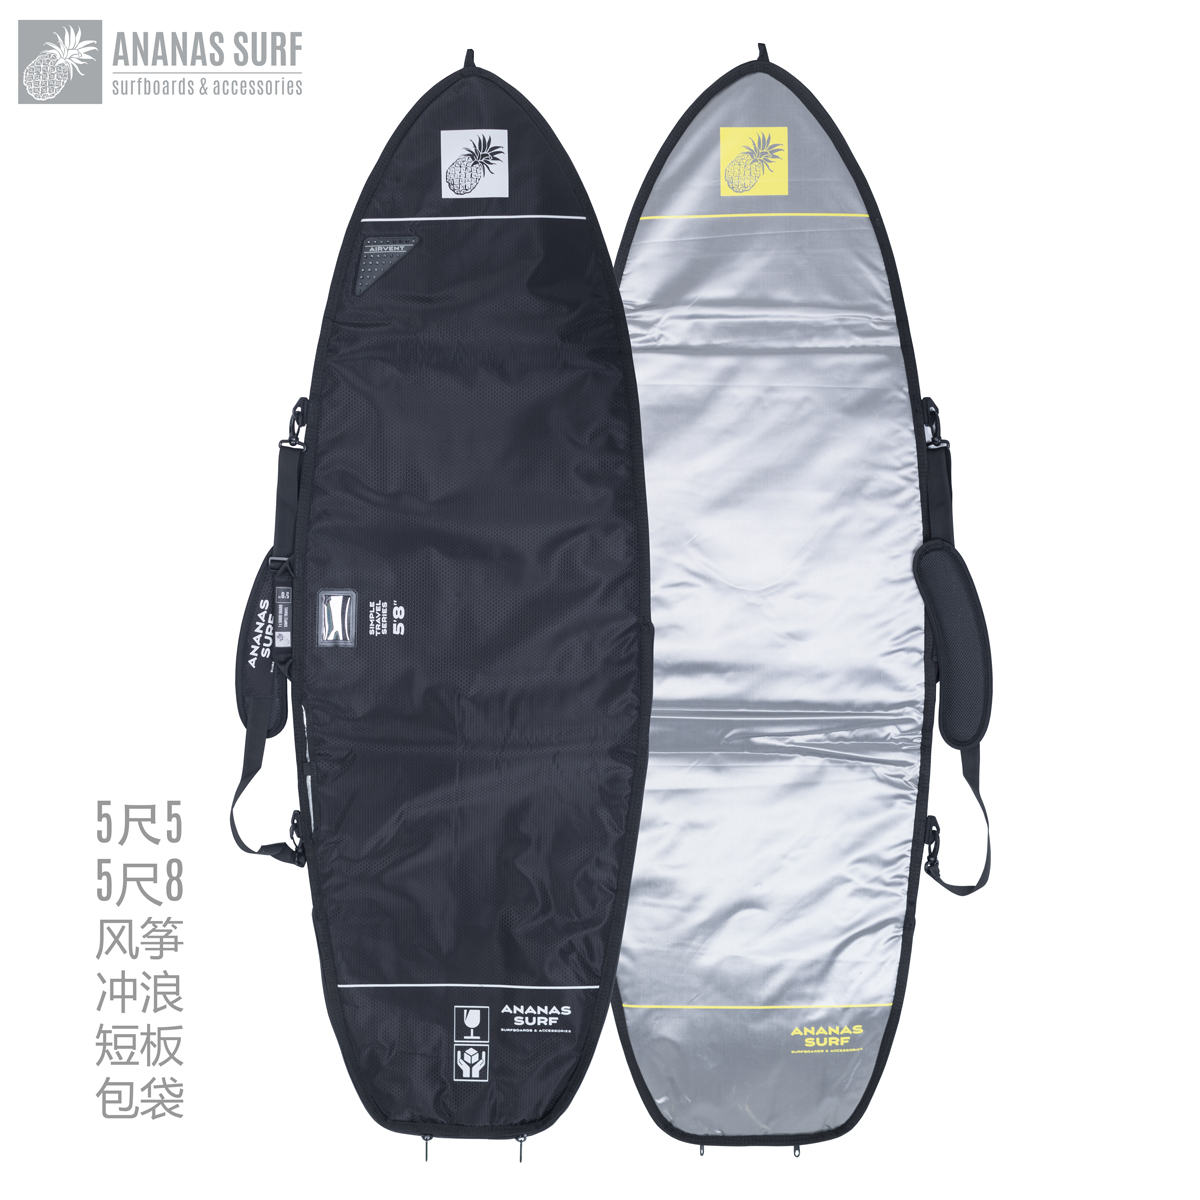 ξ  Ʈ   5Ʈ 5Ʈ 5Ʈ 8 ANANAS SURF BOARD BAG ǳ -